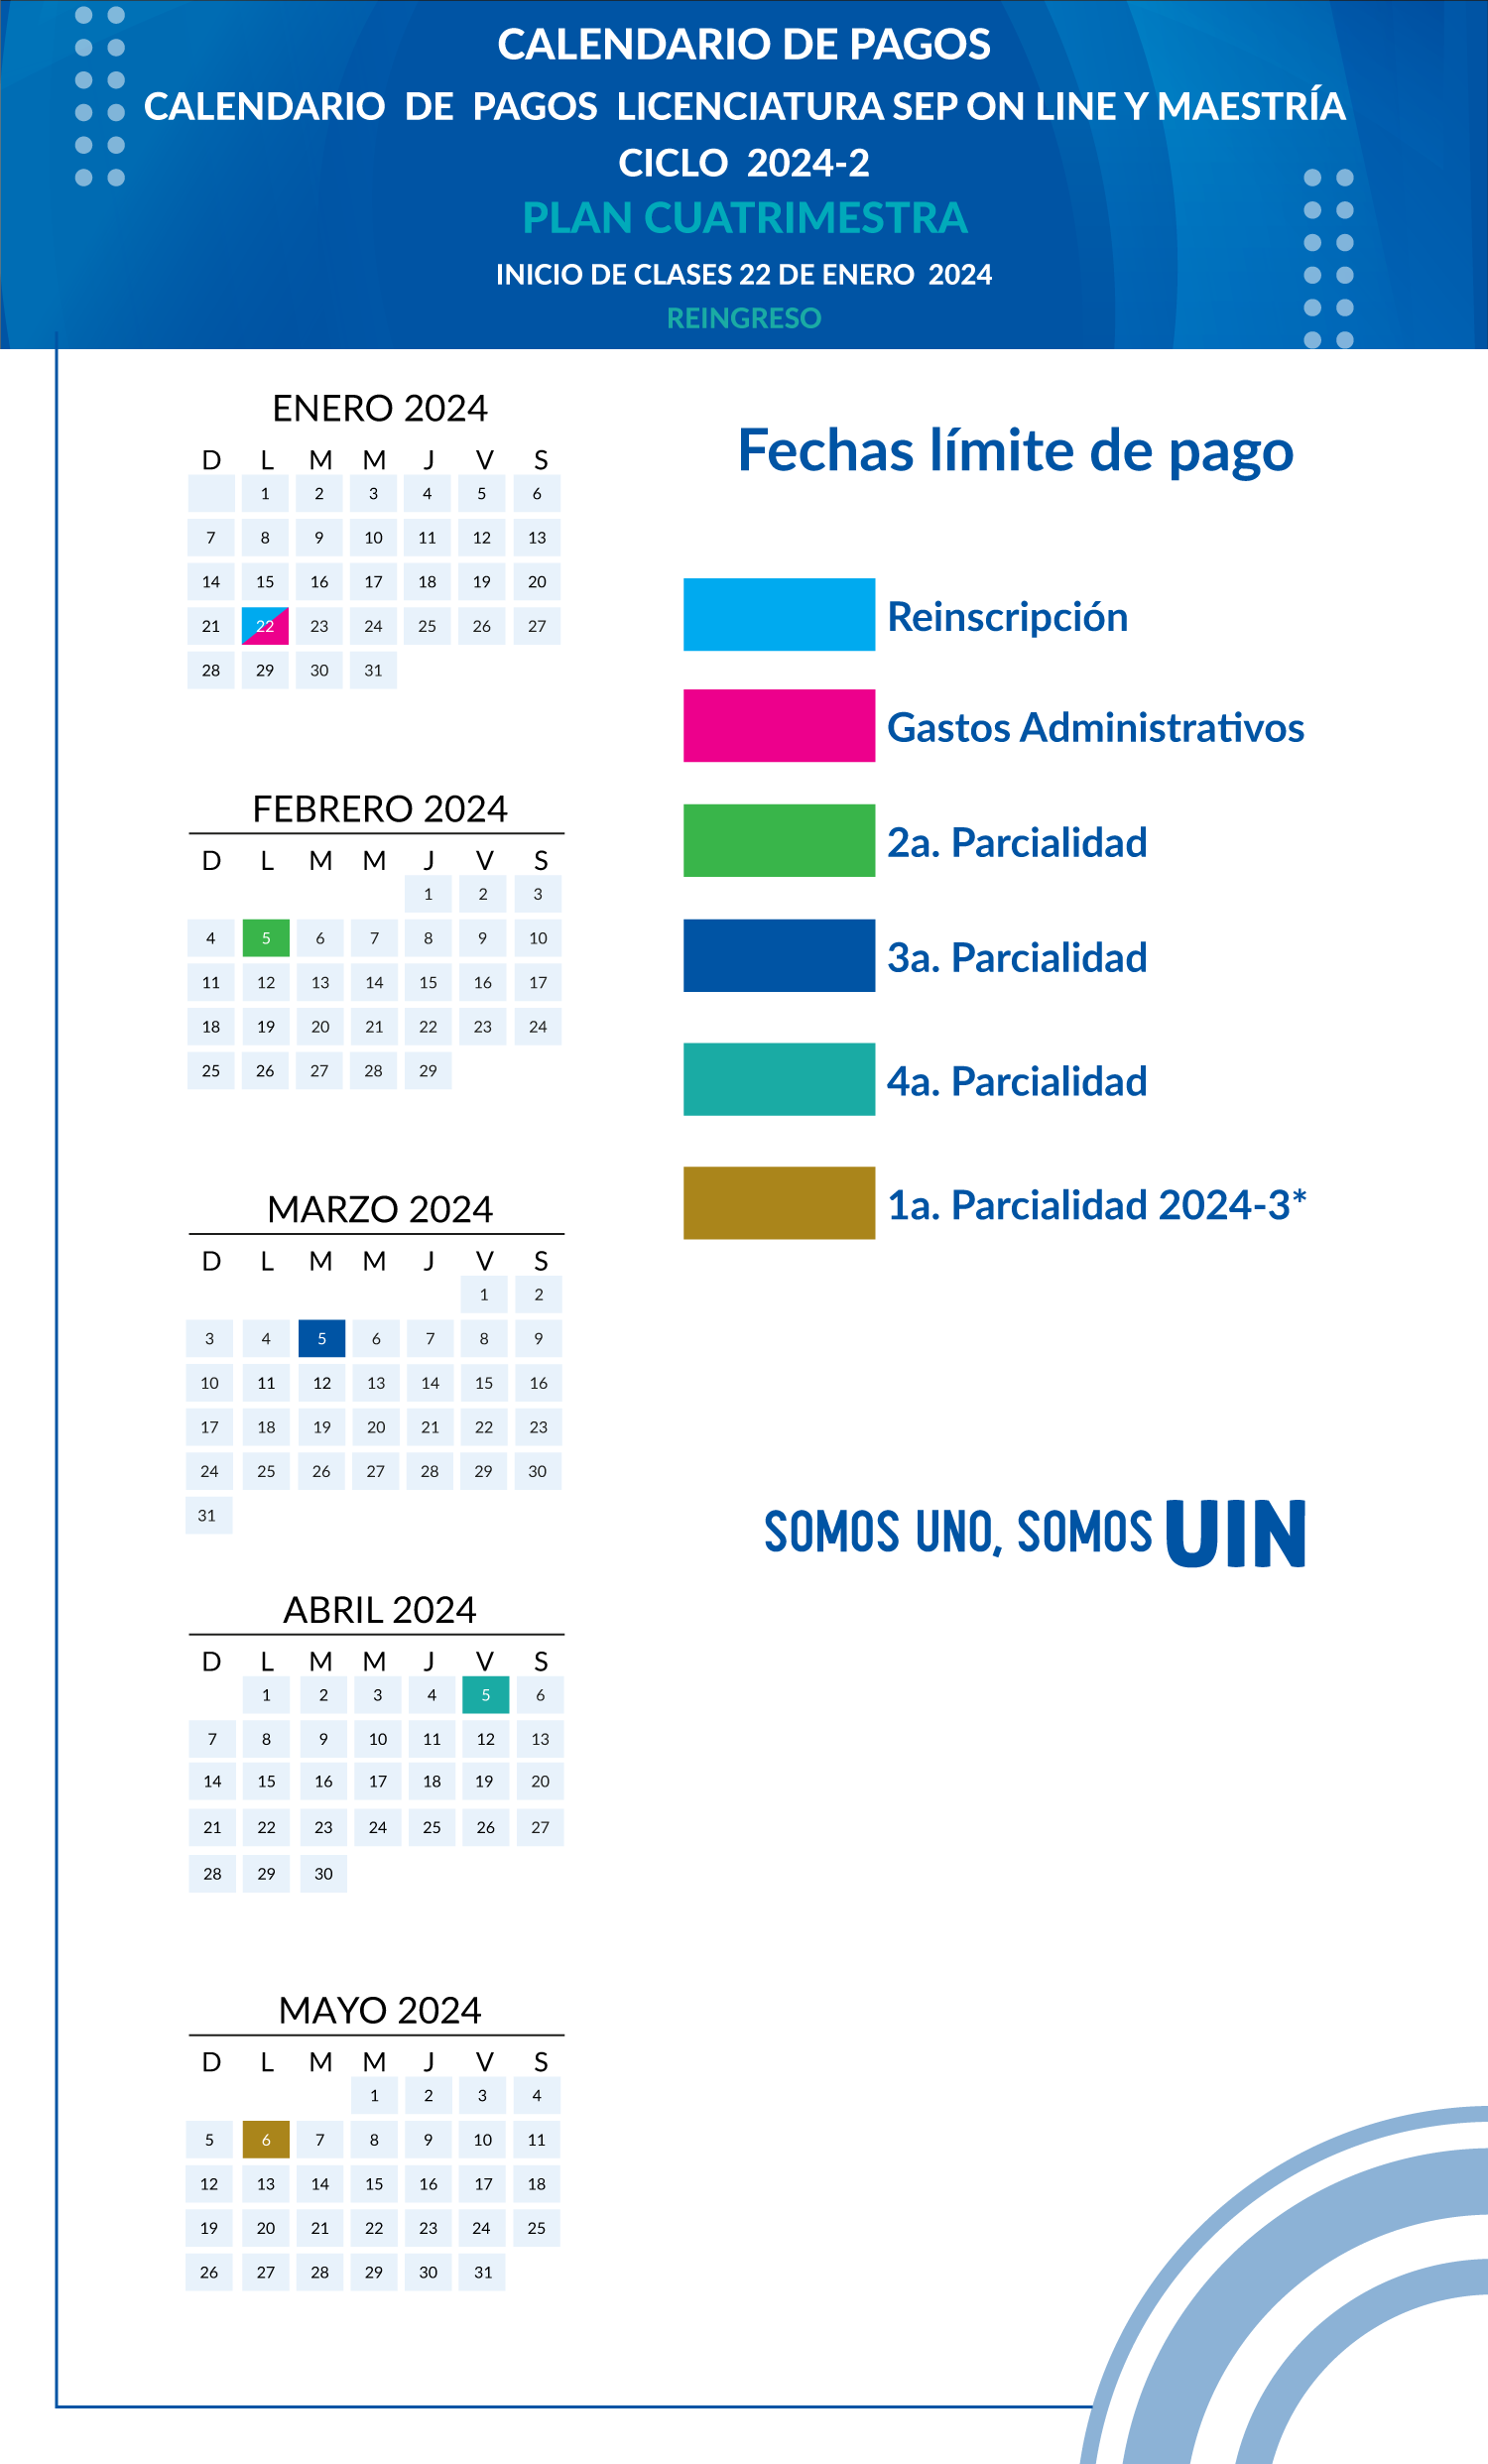 Calendario-de-pagos_LICENCIATURA-SEP-ON-LINE-Y-MAESTRÍA_Reingreso